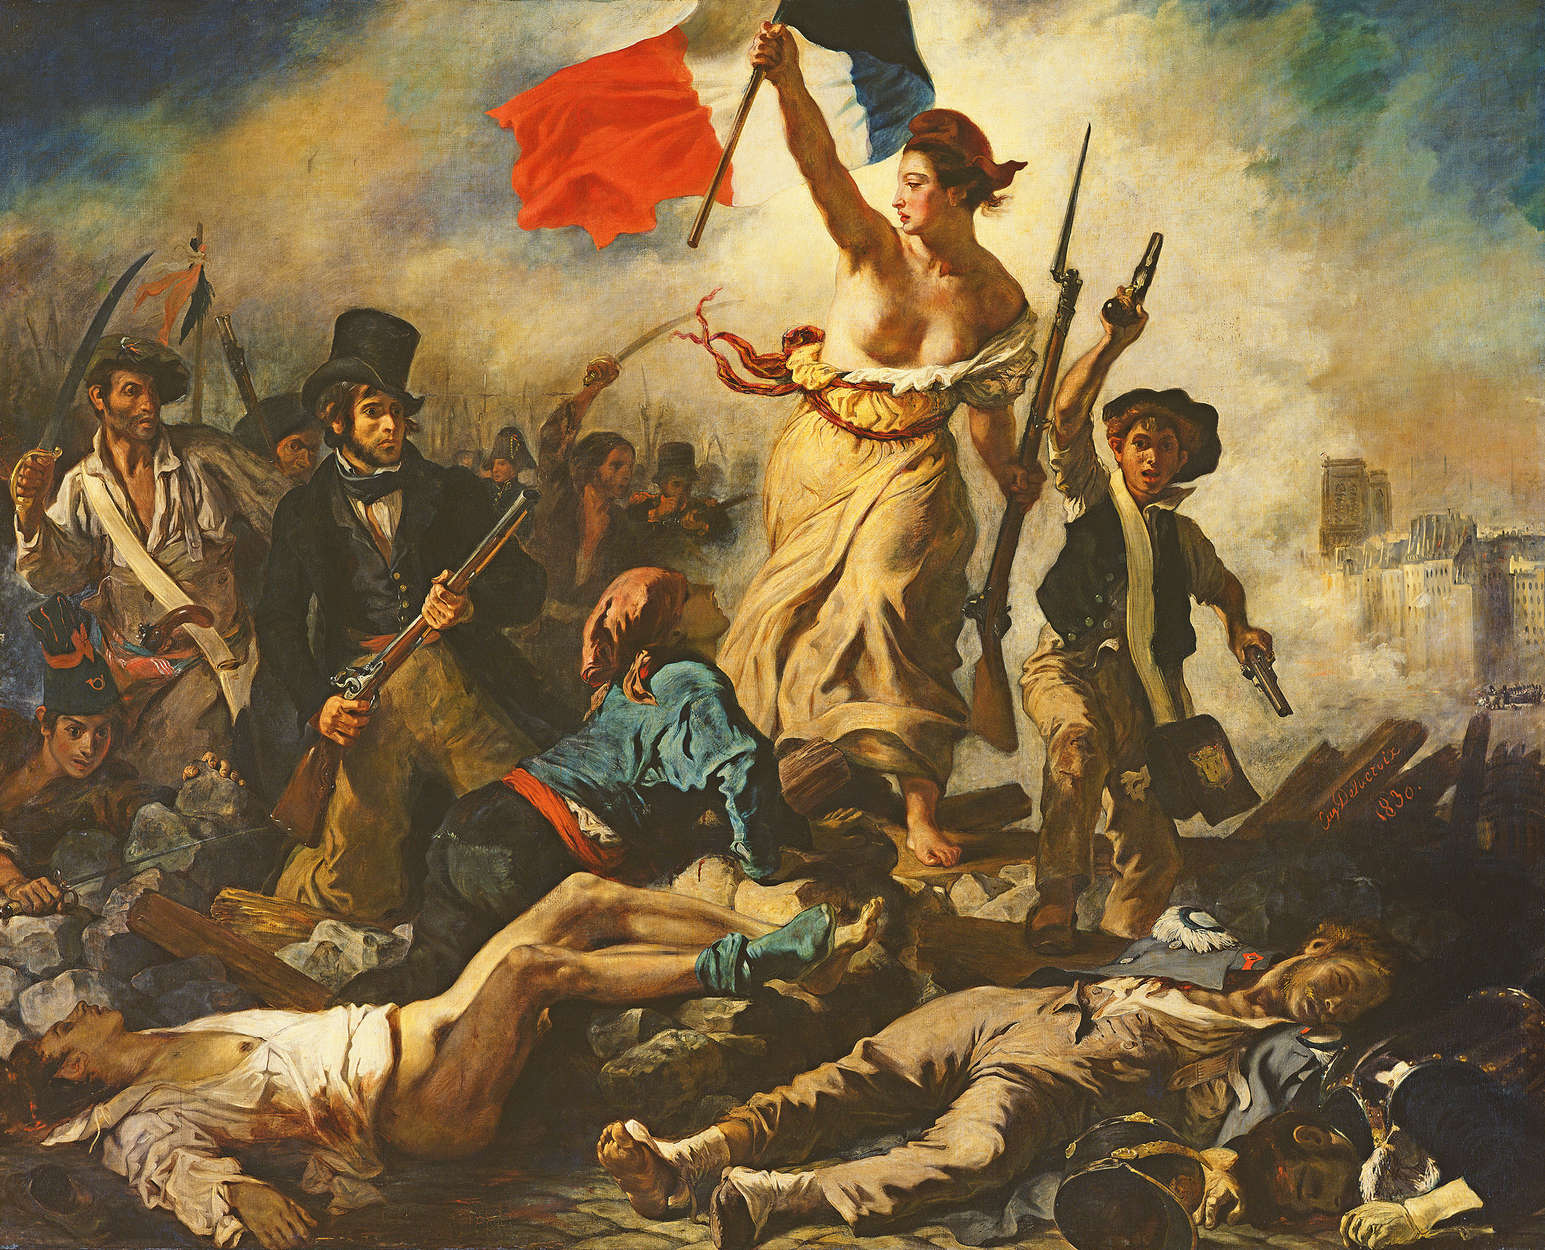             Papier peint panoramique "La liberté guidant le peuple" de Eugène Delacroix
        